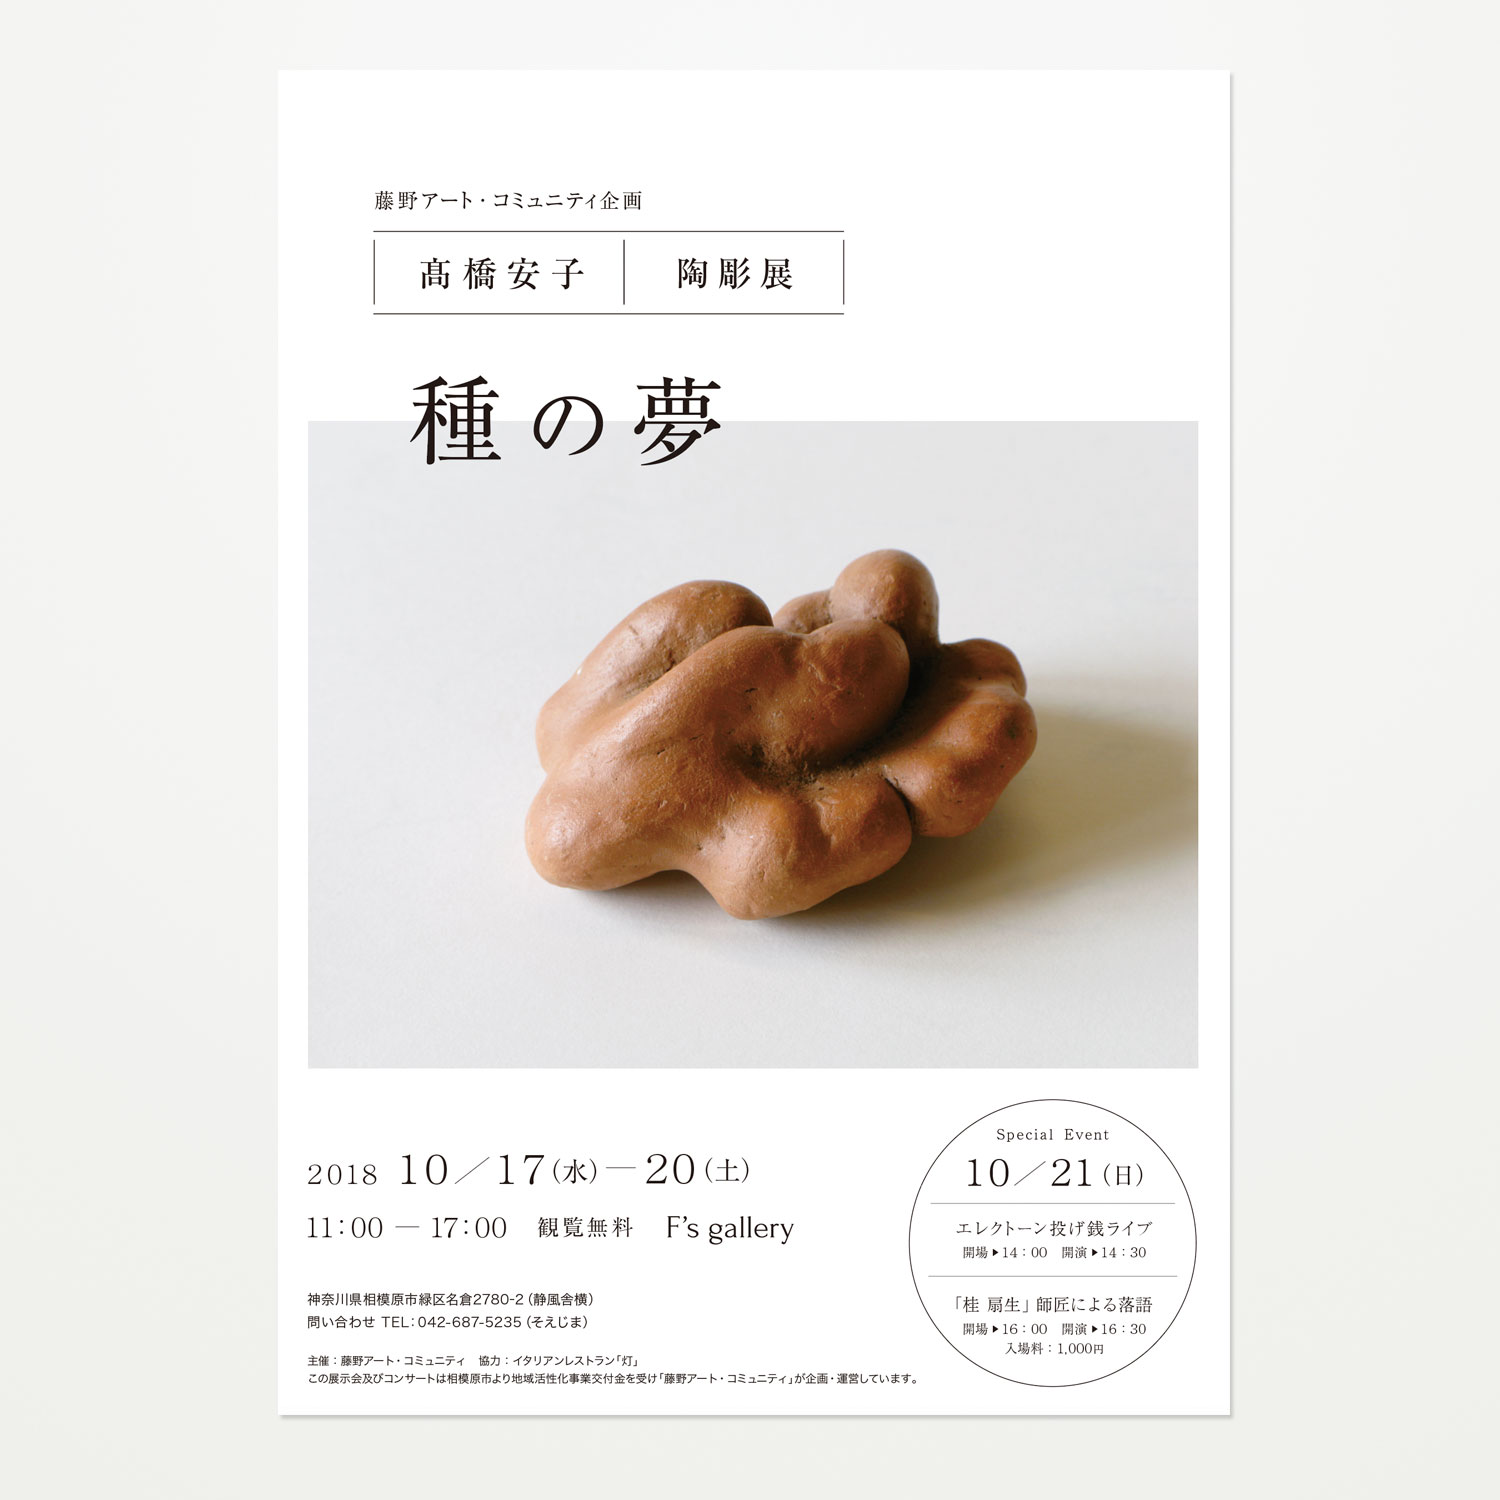 髙橋安子「種の夢」ポスター